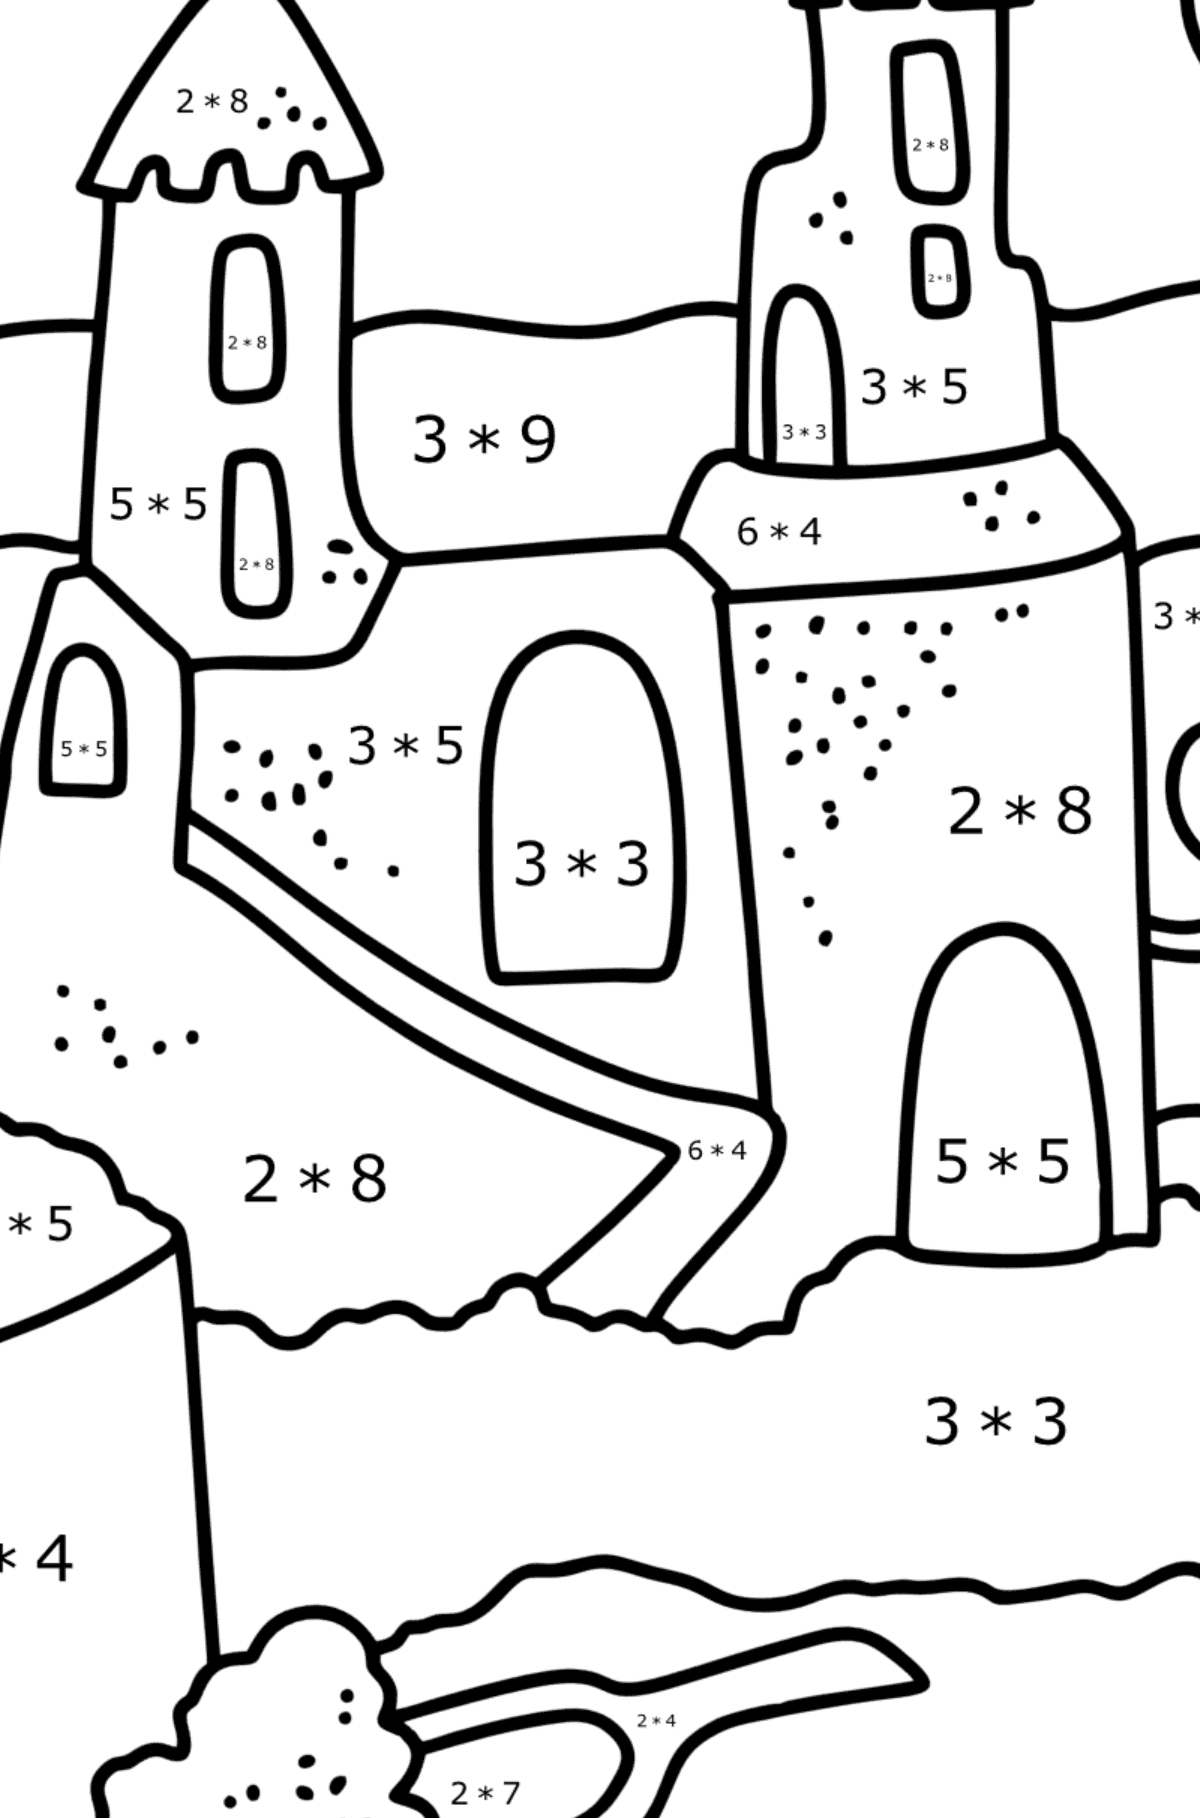 Desenho para colorir Verão - Castelo de areia - Colorindo com Matemática - Multiplicação para Crianças